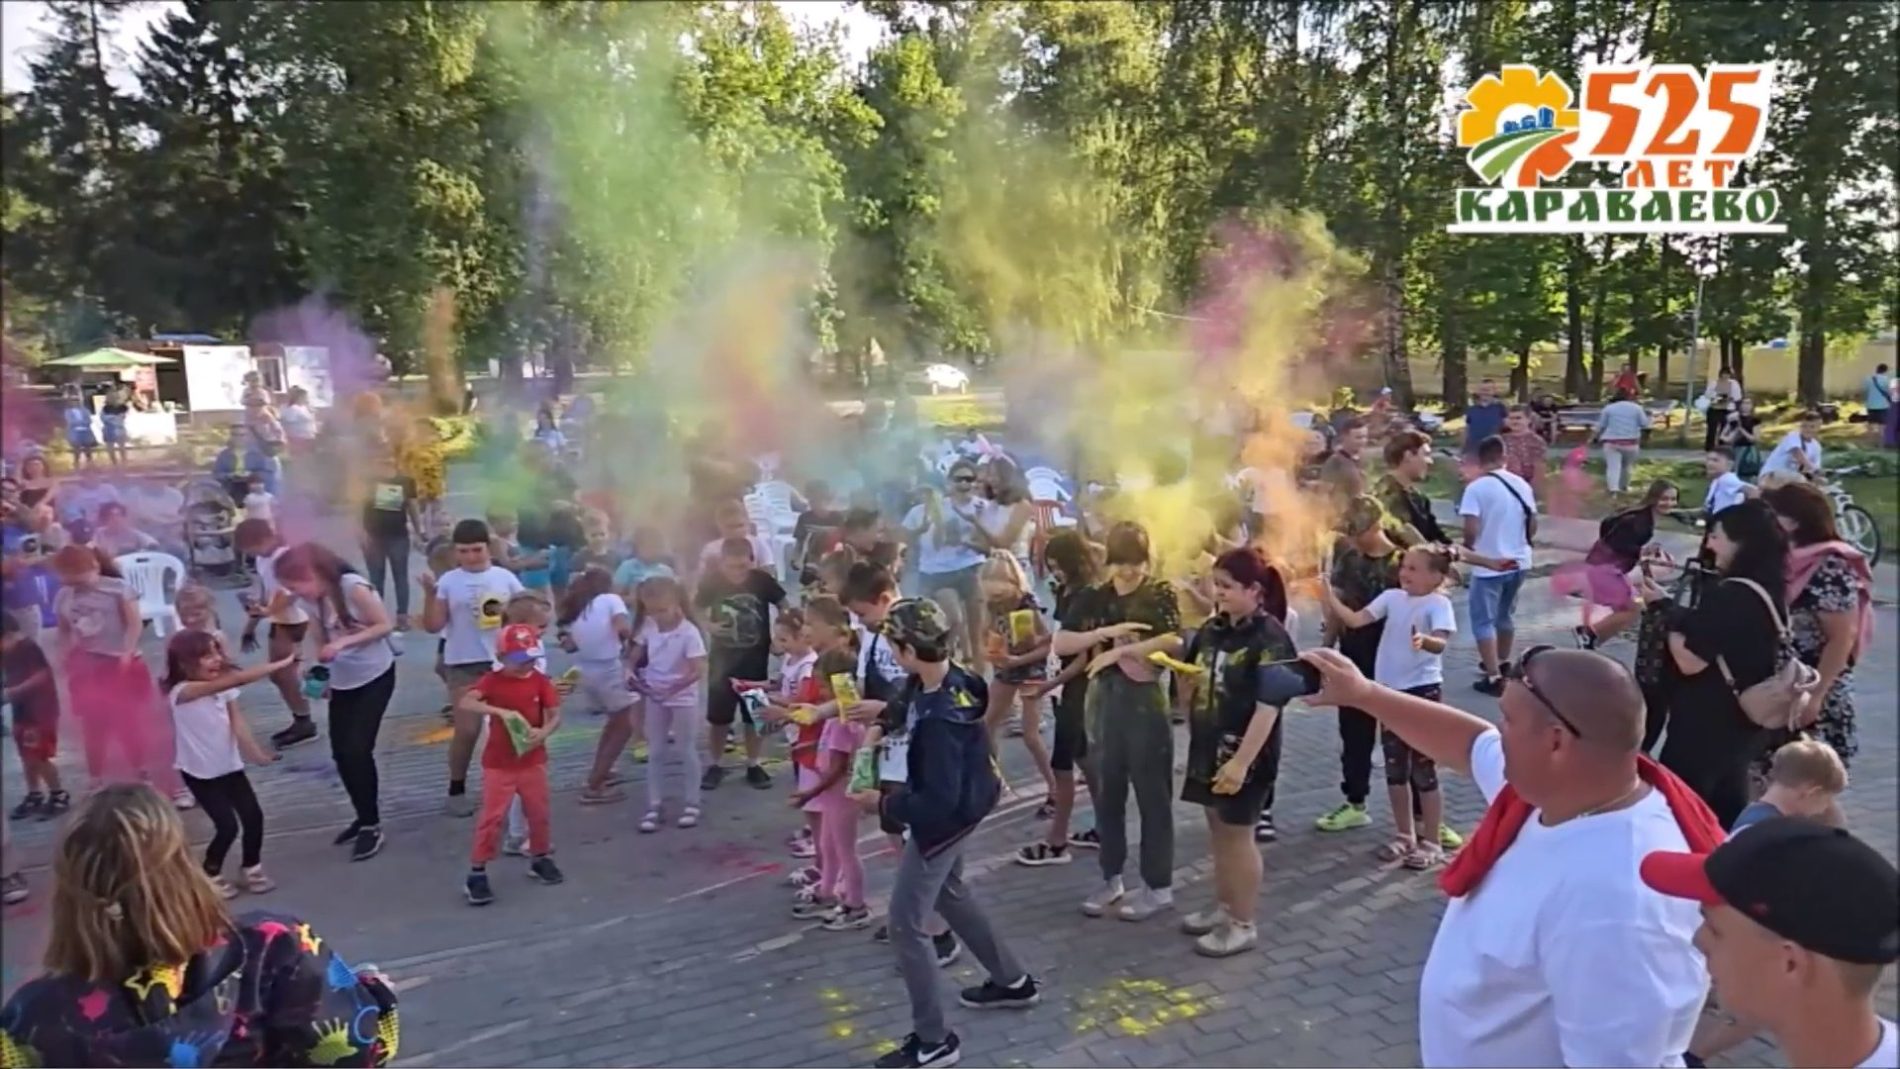 Поселок Караваево ярко отметил 525-й день рождения